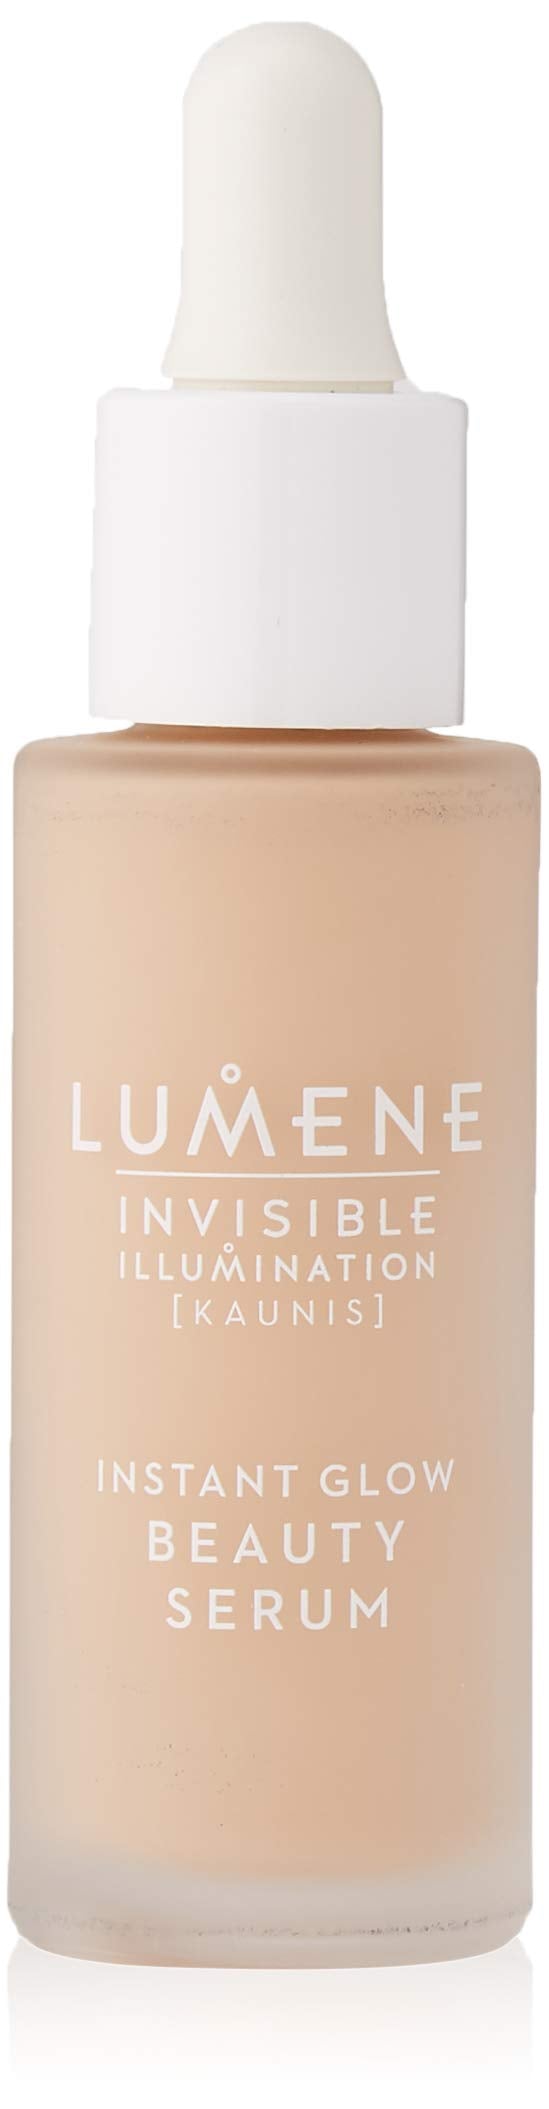 [Australia] - Lumene Invisible Illumination Instant Glow Beauty Serum 30ml Medium 